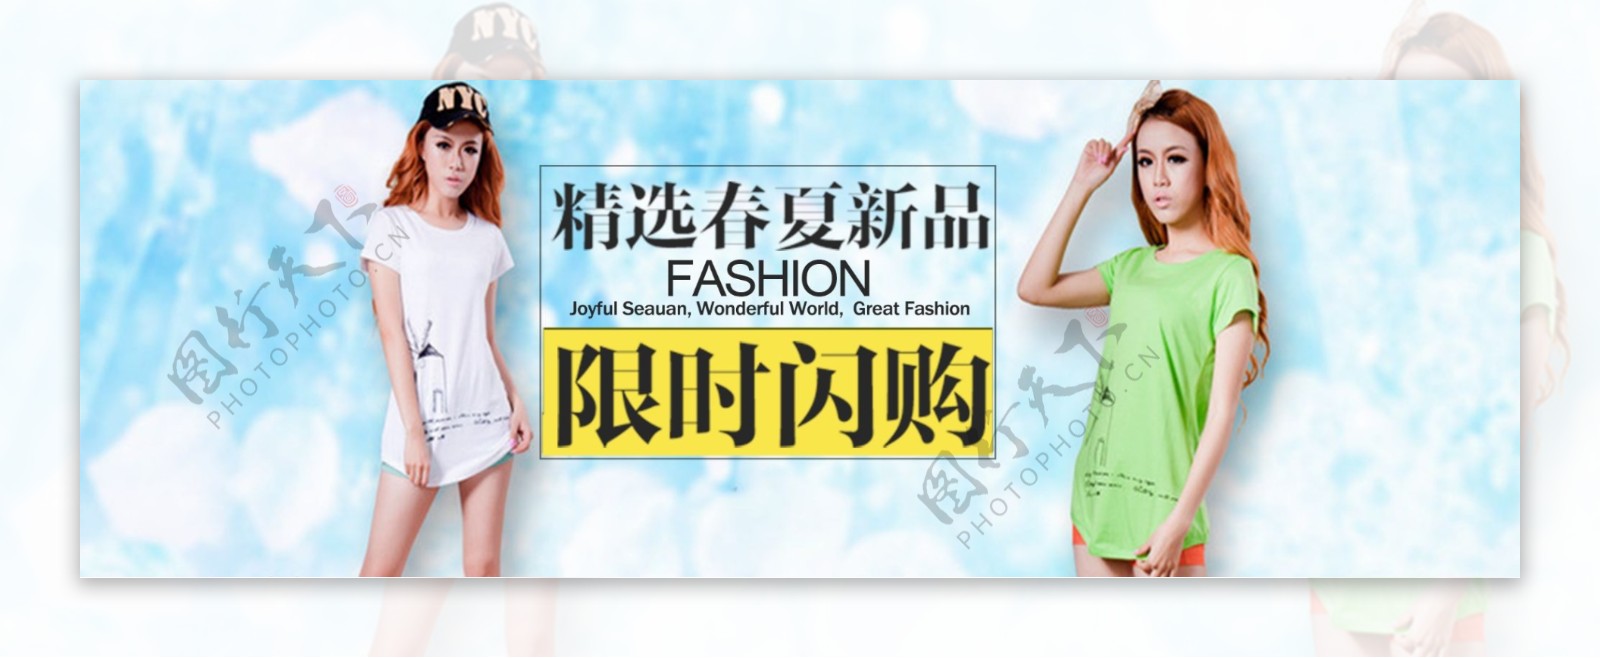 淘宝女装天猫风尚节春夏促销海报设计